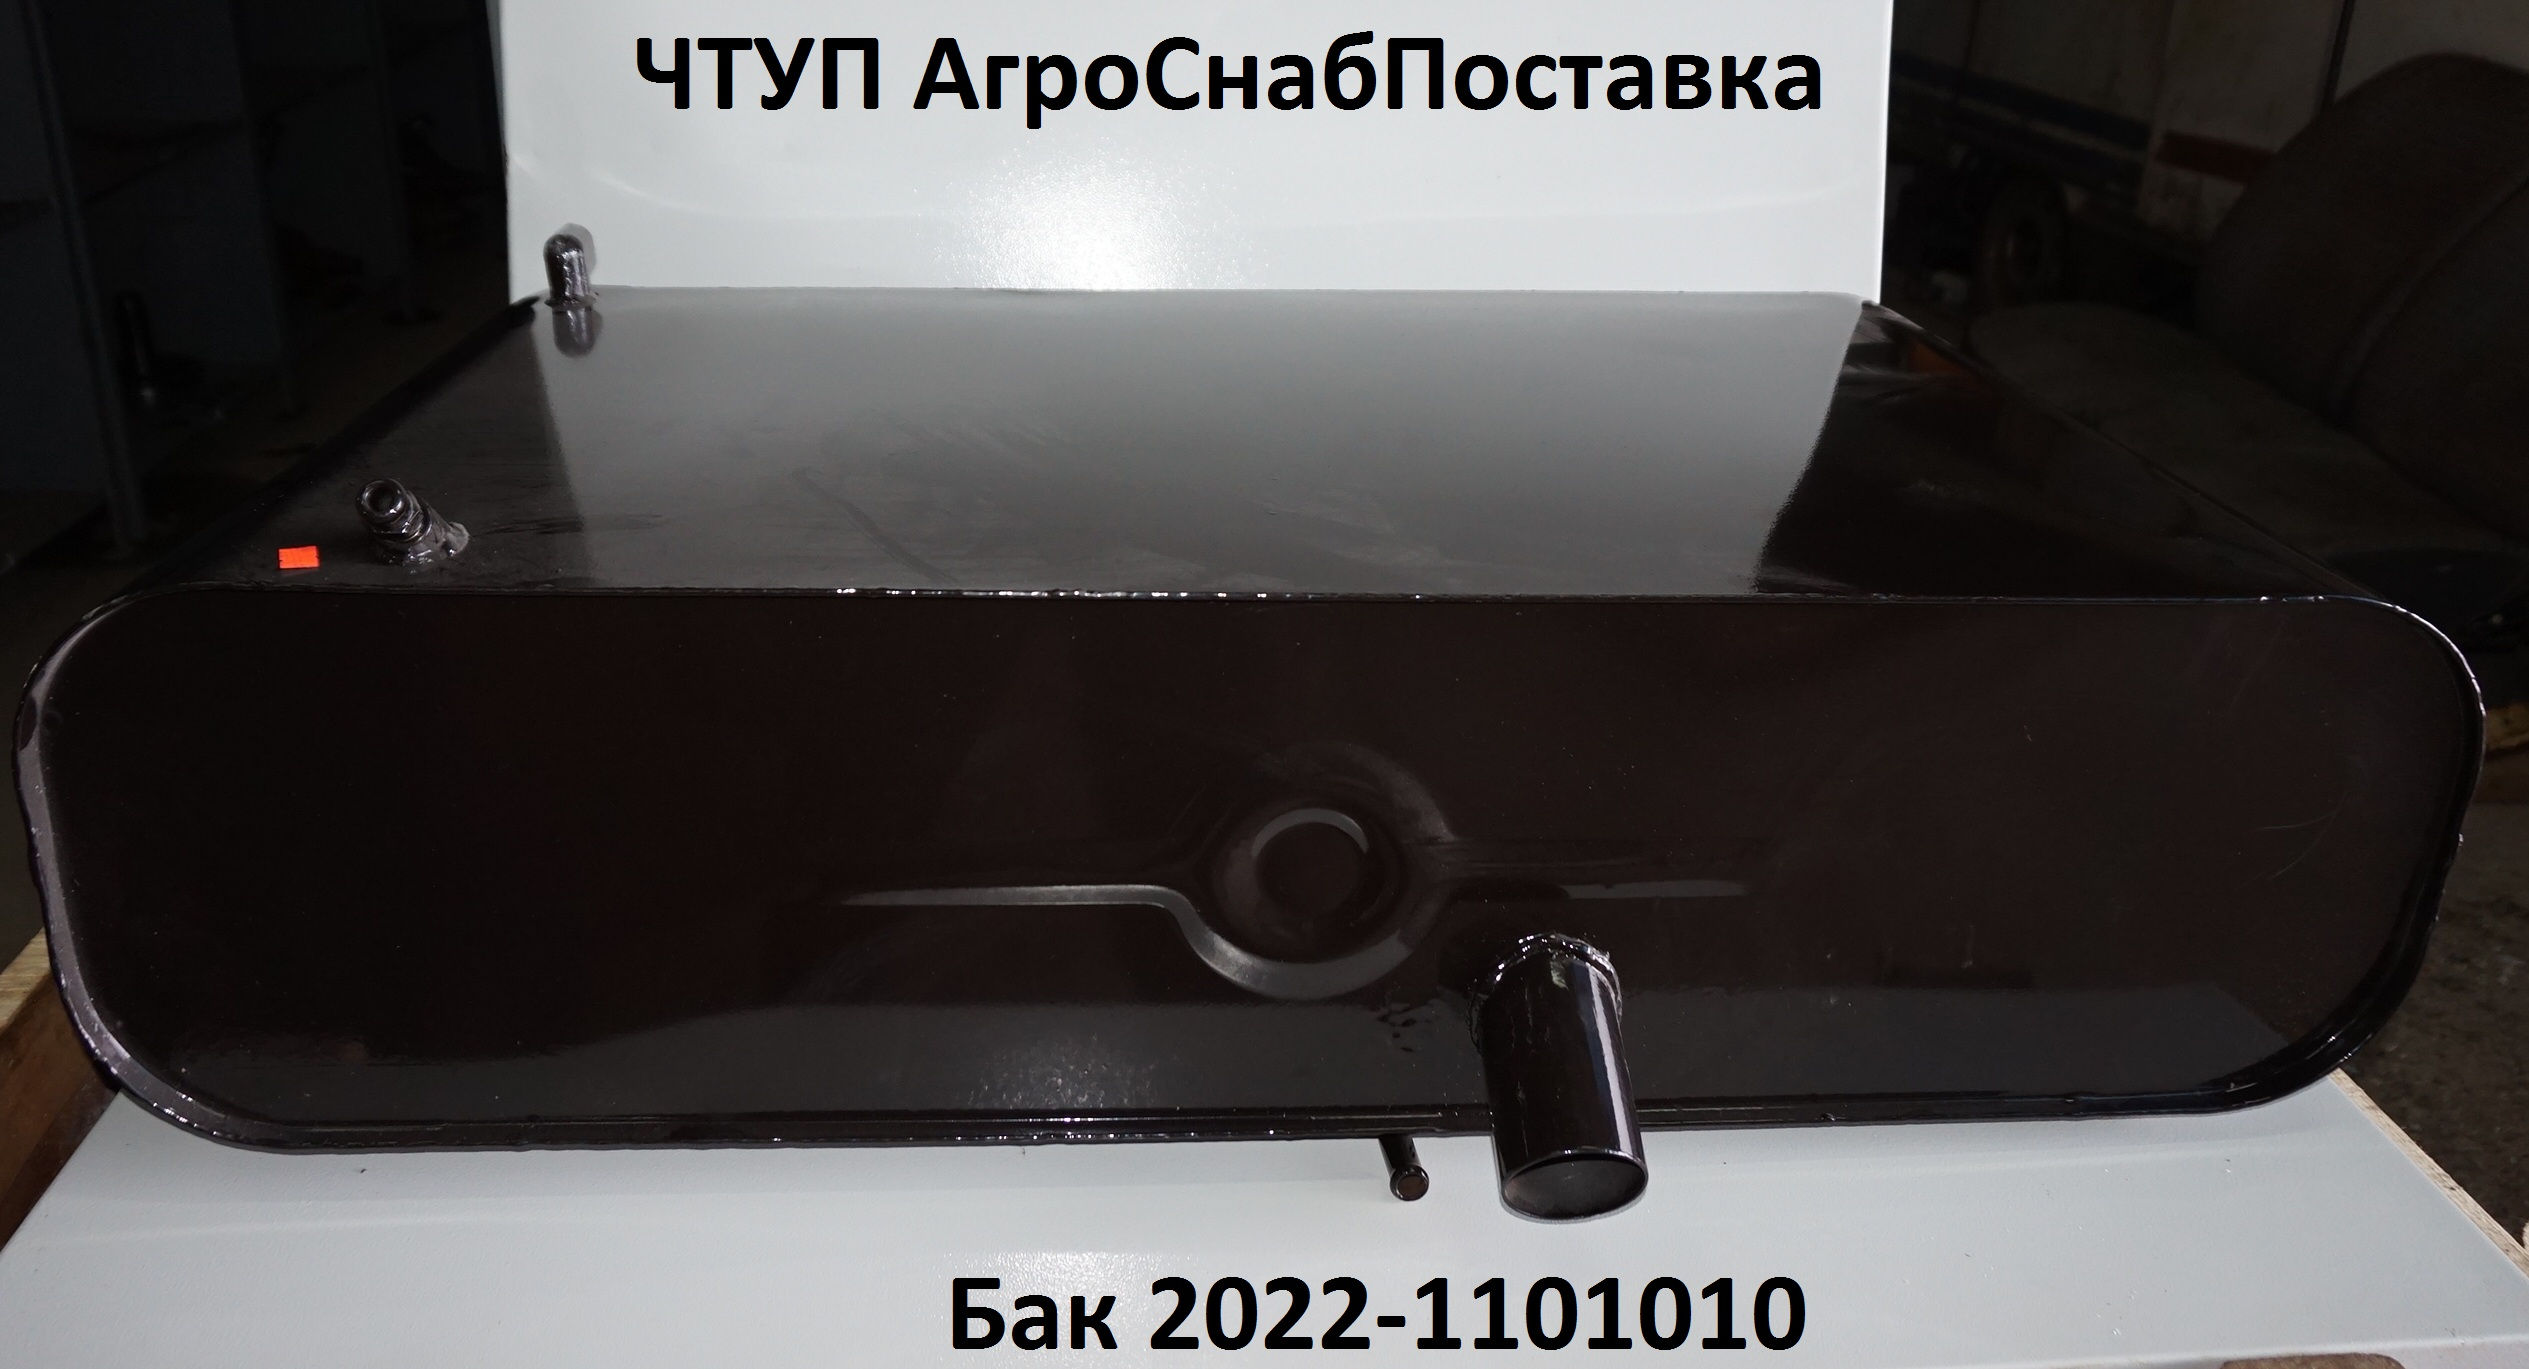 Бак 2022-1101010